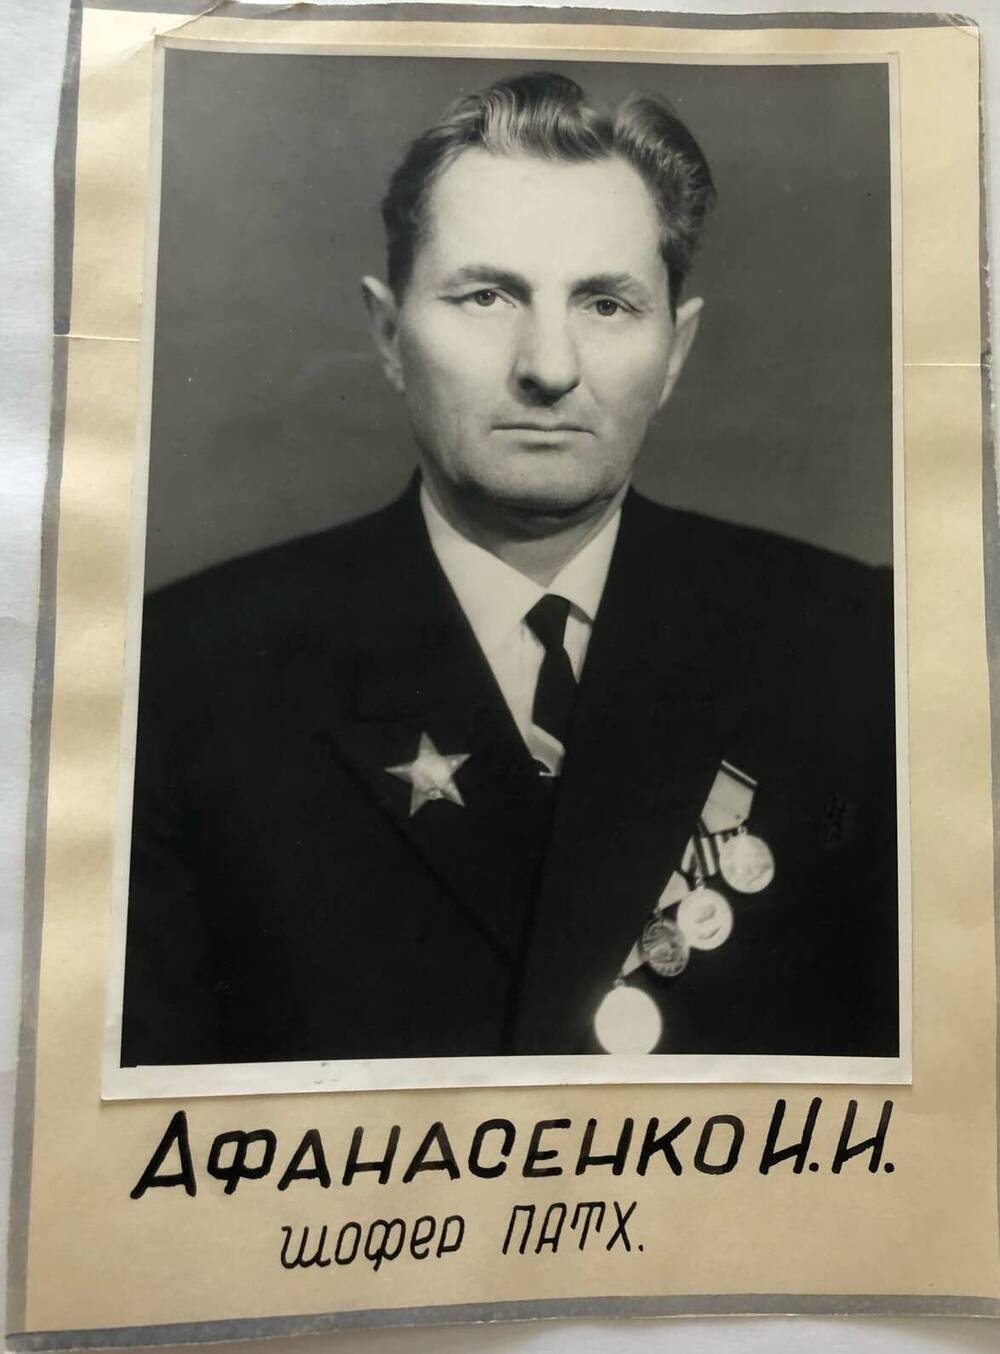 Фотография Афанасенко И.И., камышанина, участника Великой Отечественной войны 1941-1945 гг., защитника Сталинграда